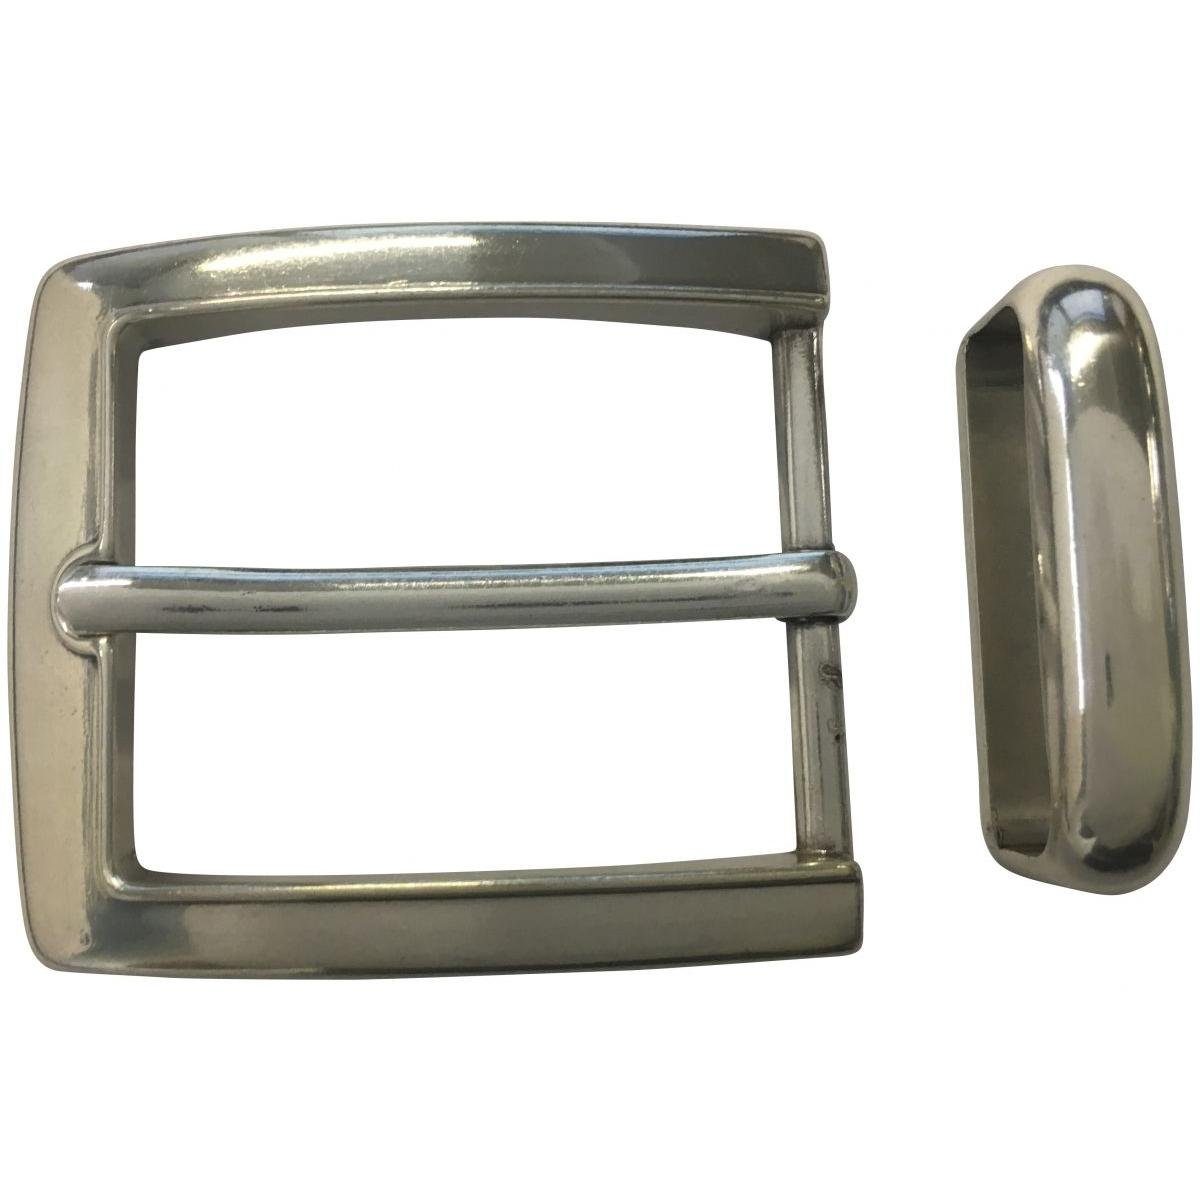 BELTINGER Gürtelschnalle mit Schlaufe 4,0 cm - Buckle Gürtelschließe 40mm - Dorn-Schließe - Gür Silber